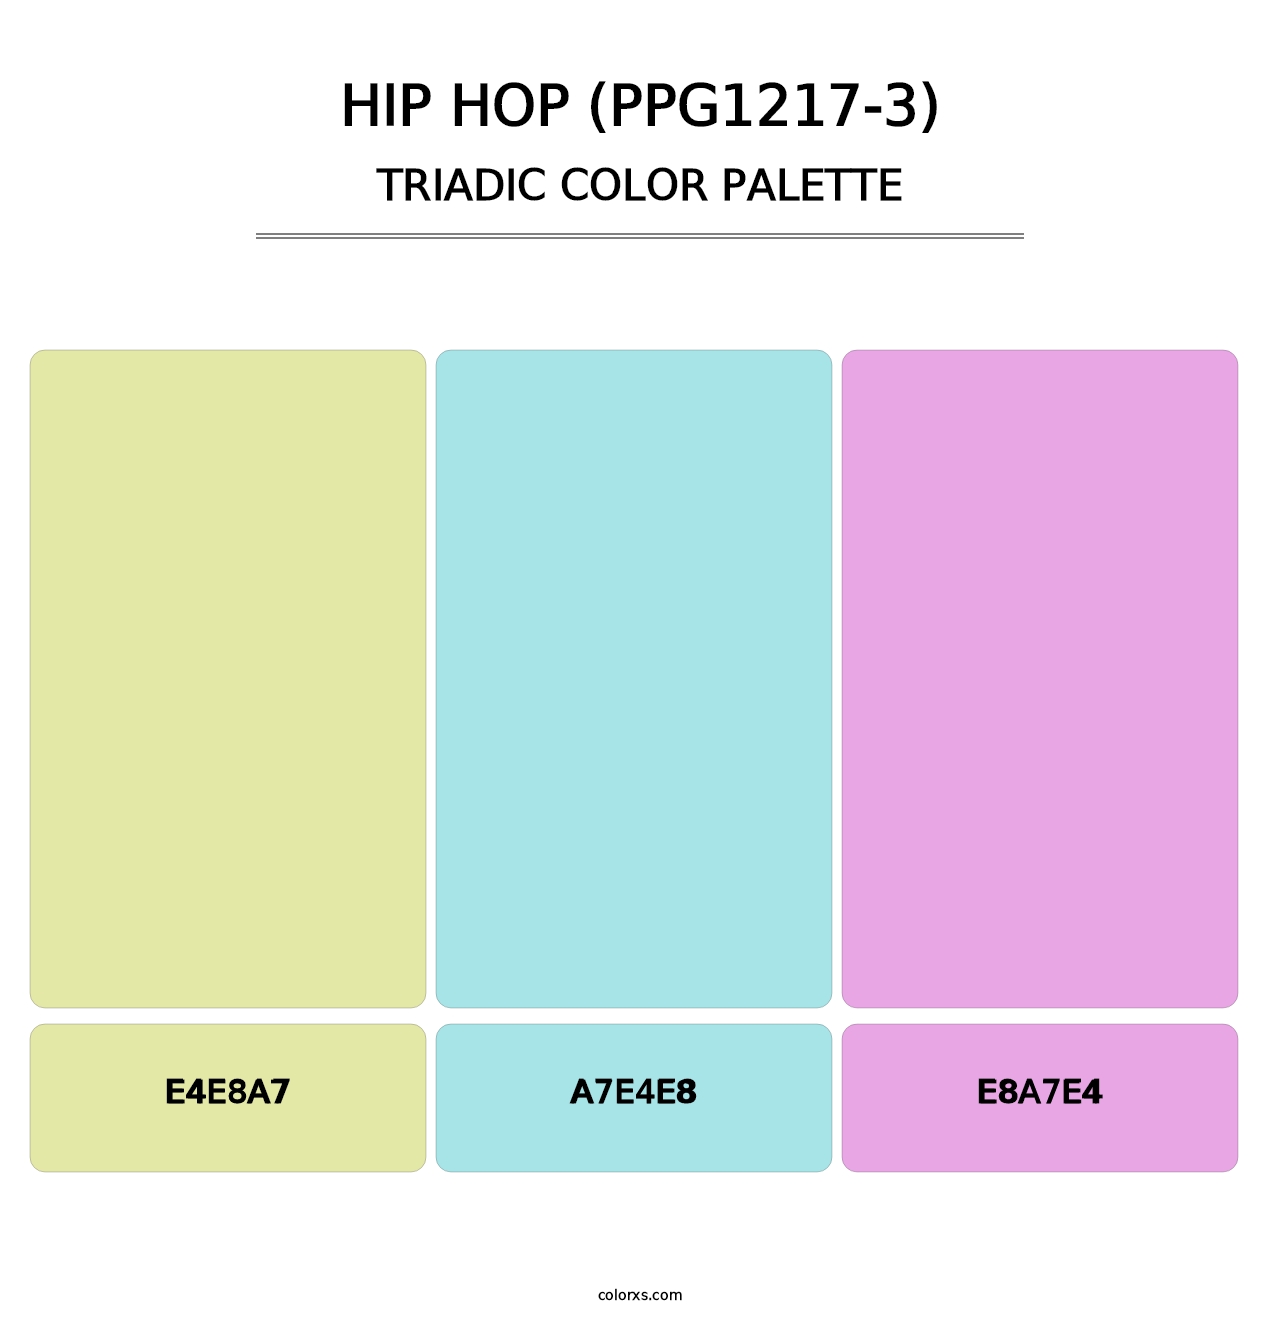 Hip Hop (PPG1217-3) - Triadic Color Palette